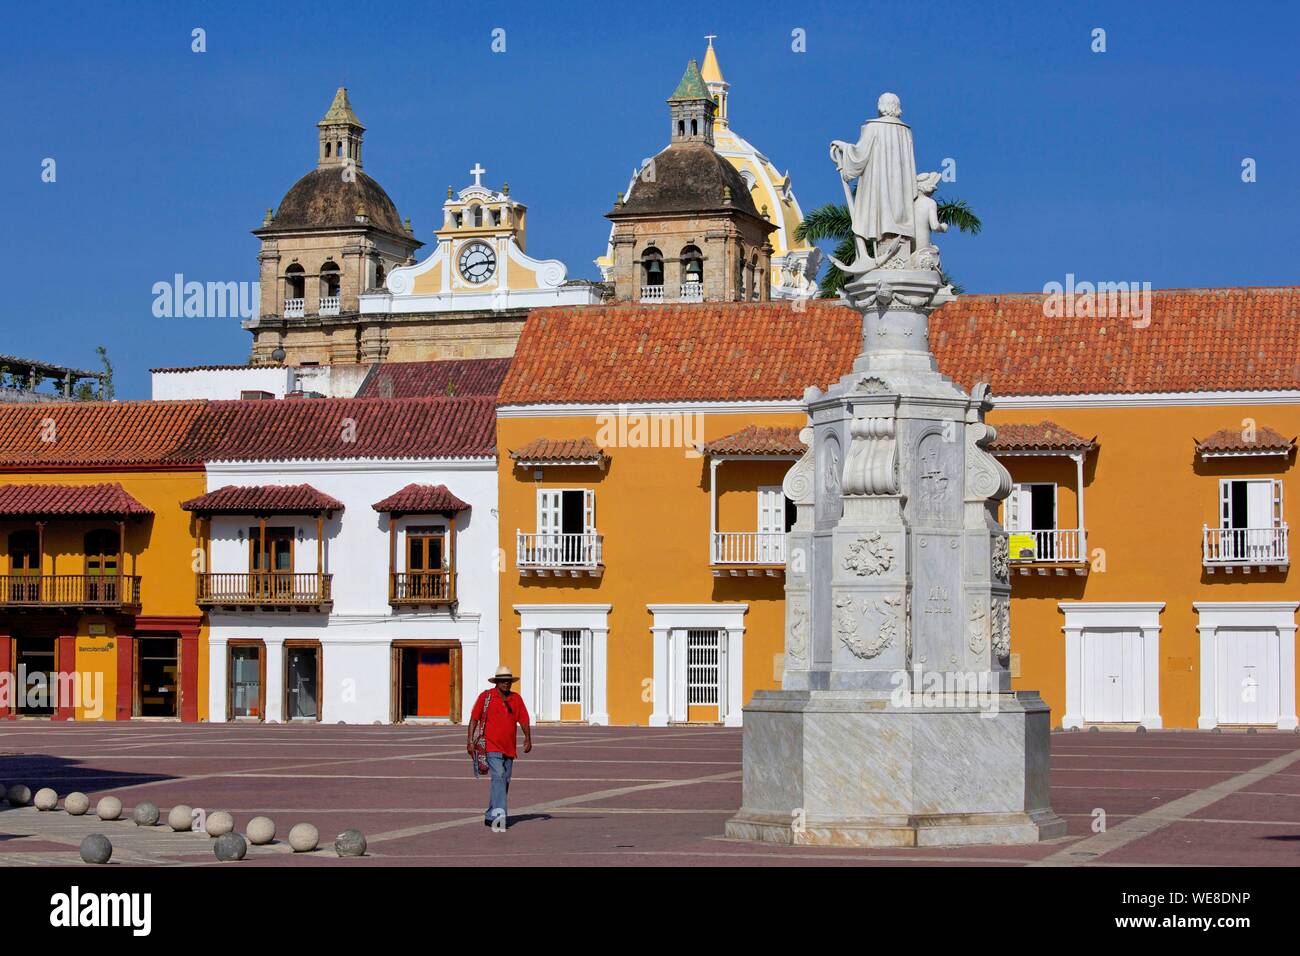 La Colombia, Dipartimento di Bolivar, Cartagena, elencati come patrimonio mondiale dall' UNESCO, facciate coloniale della Plaza de San Pedro Claver Foto Stock